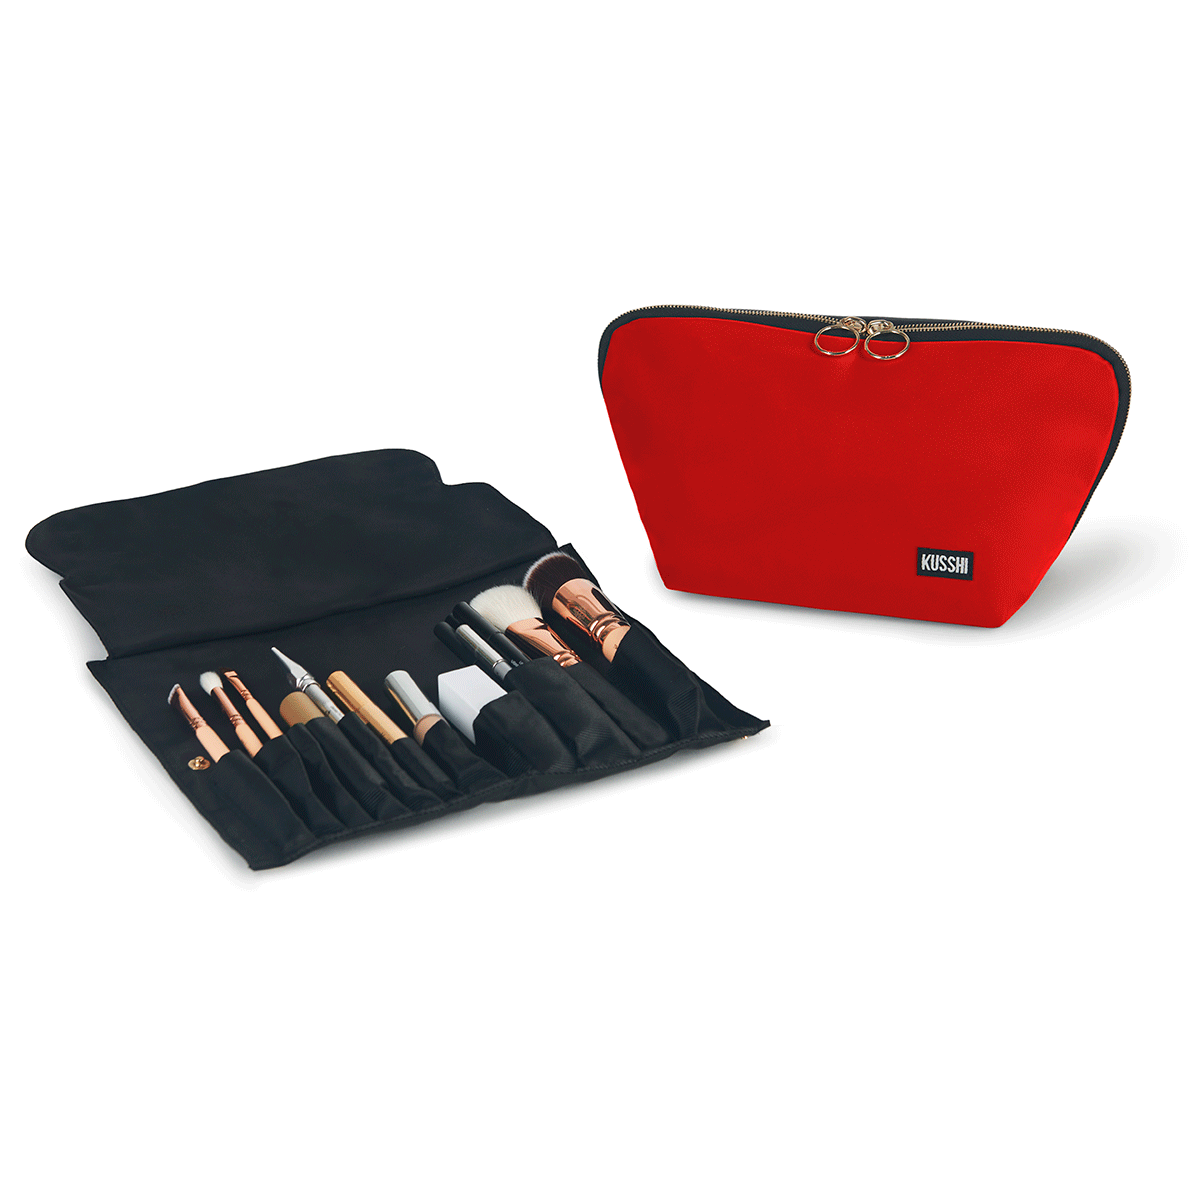 Signature Medium Makeup Bag and Makeup Brush Organizer | KUSSHI